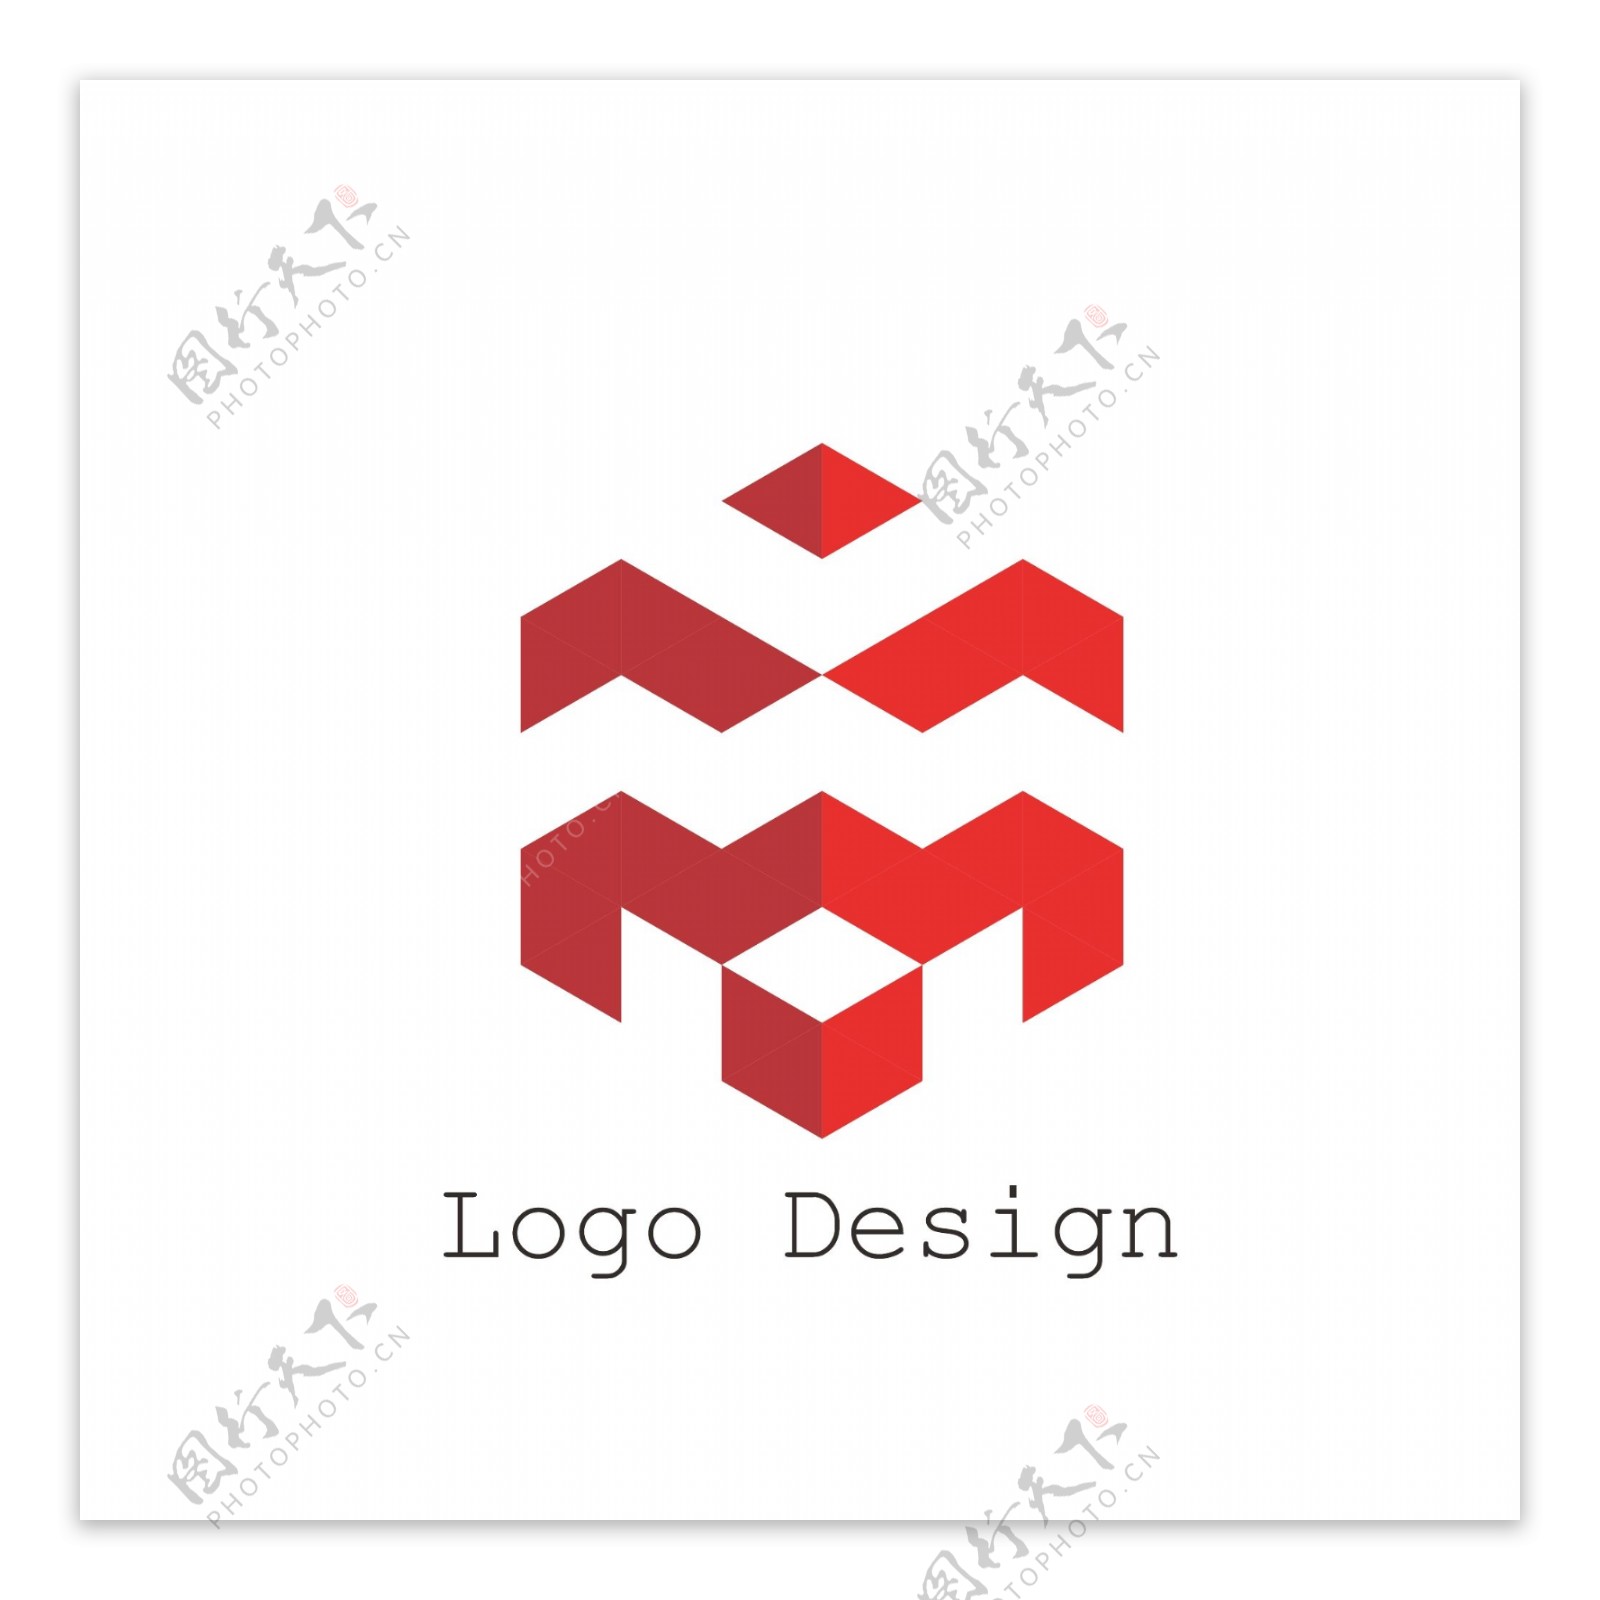 时尚简约企业商标logo设计